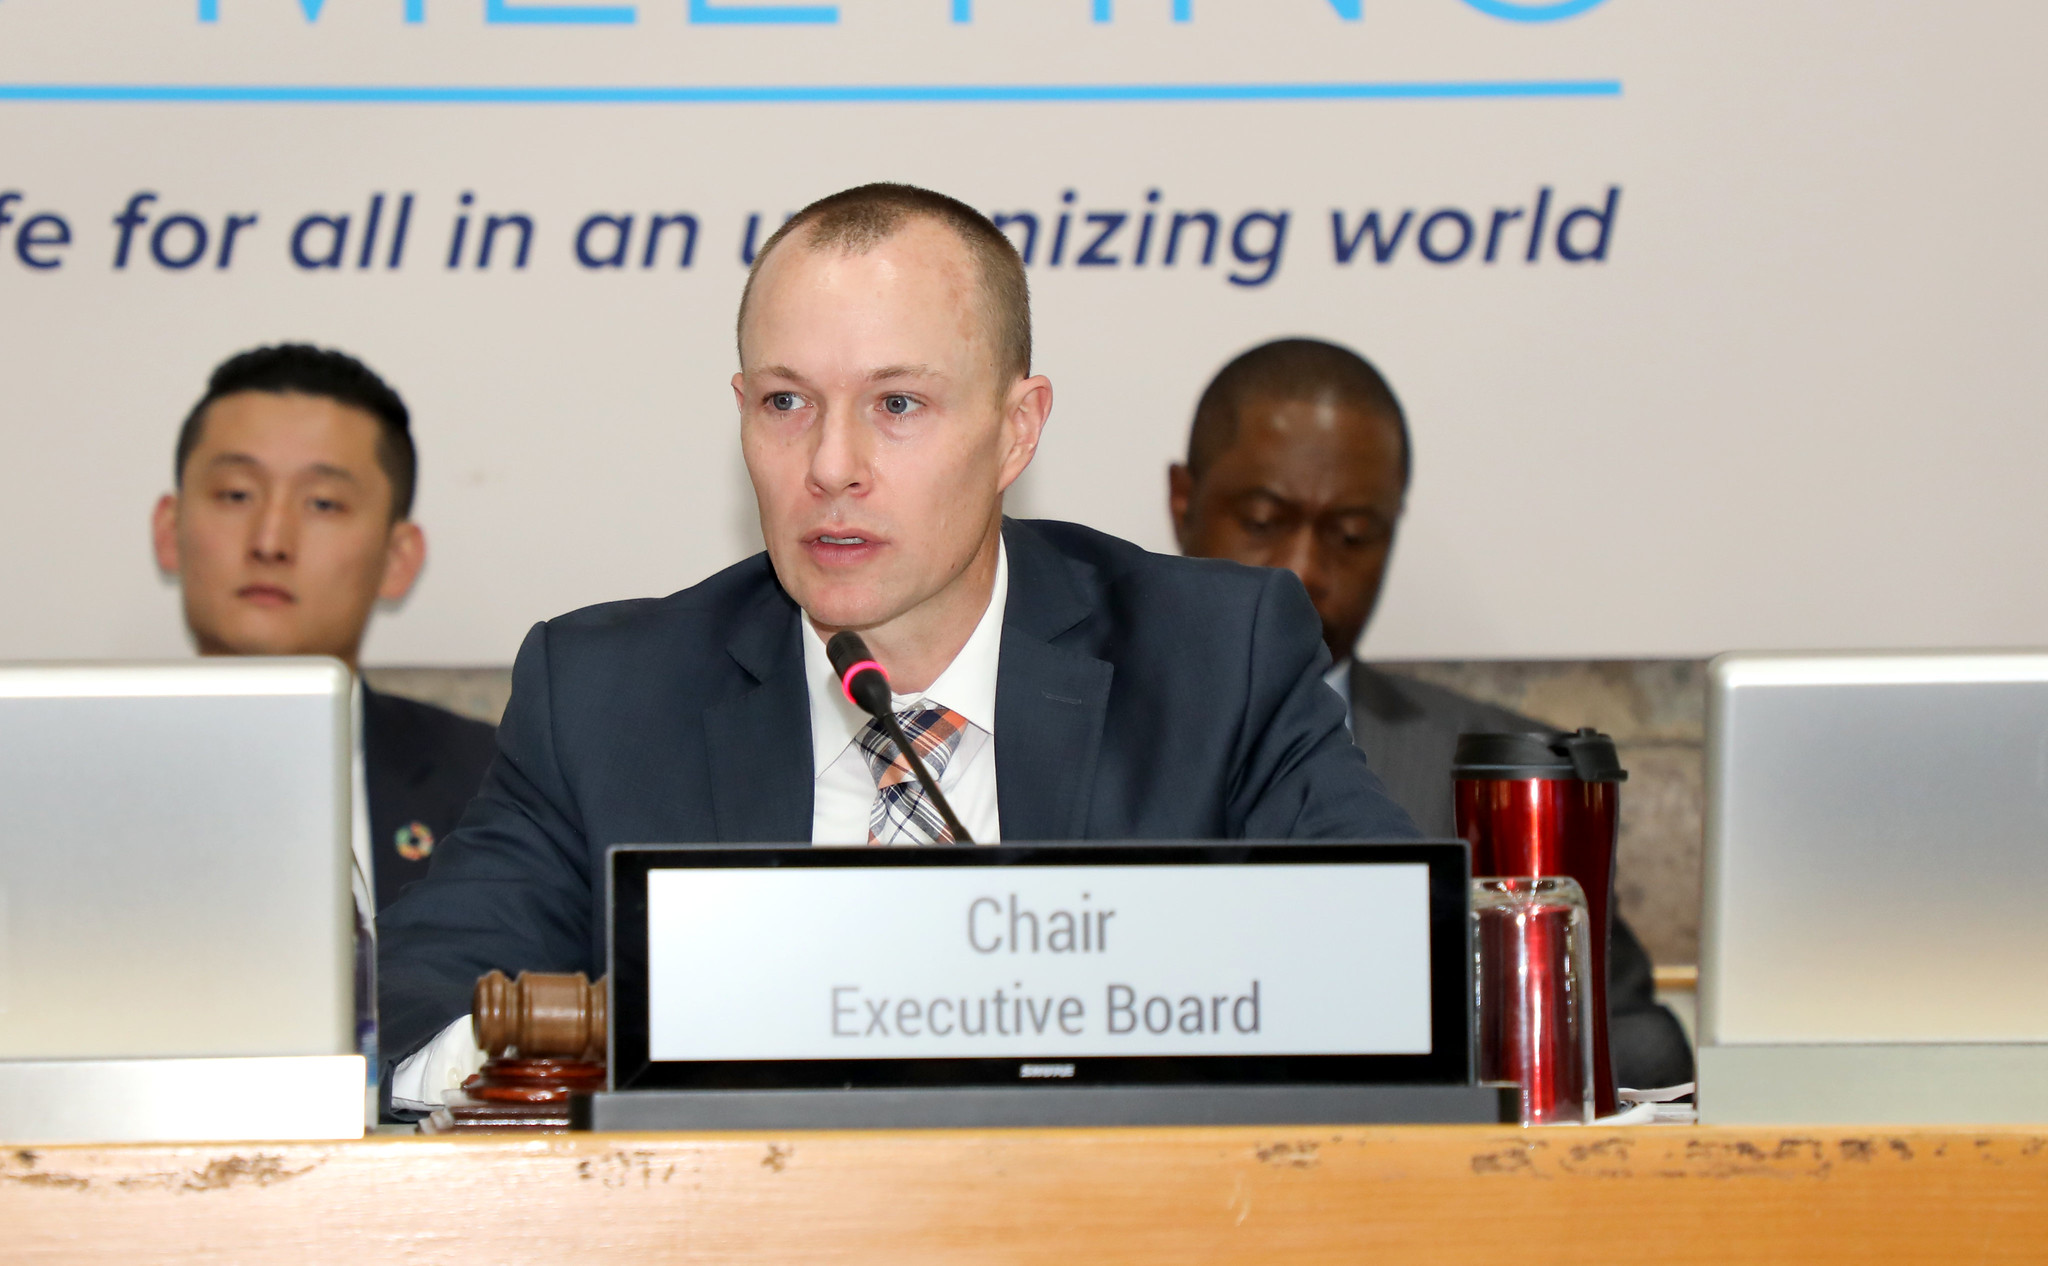 UN-Habitat Executive Board meeting seen as ‘a momentous occasion’